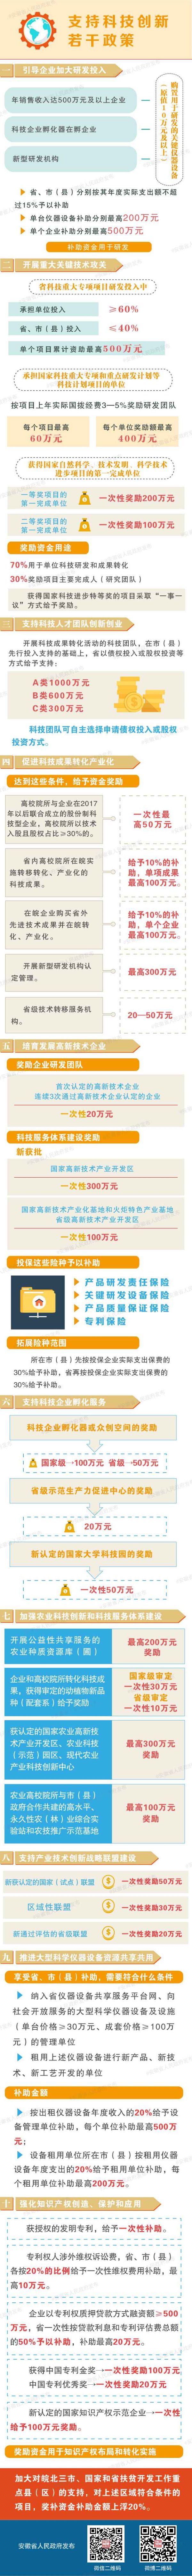 安徽省人民政府关于印发支持科技创新若干政策的通知（皖政〔2017〕52号）| 图解